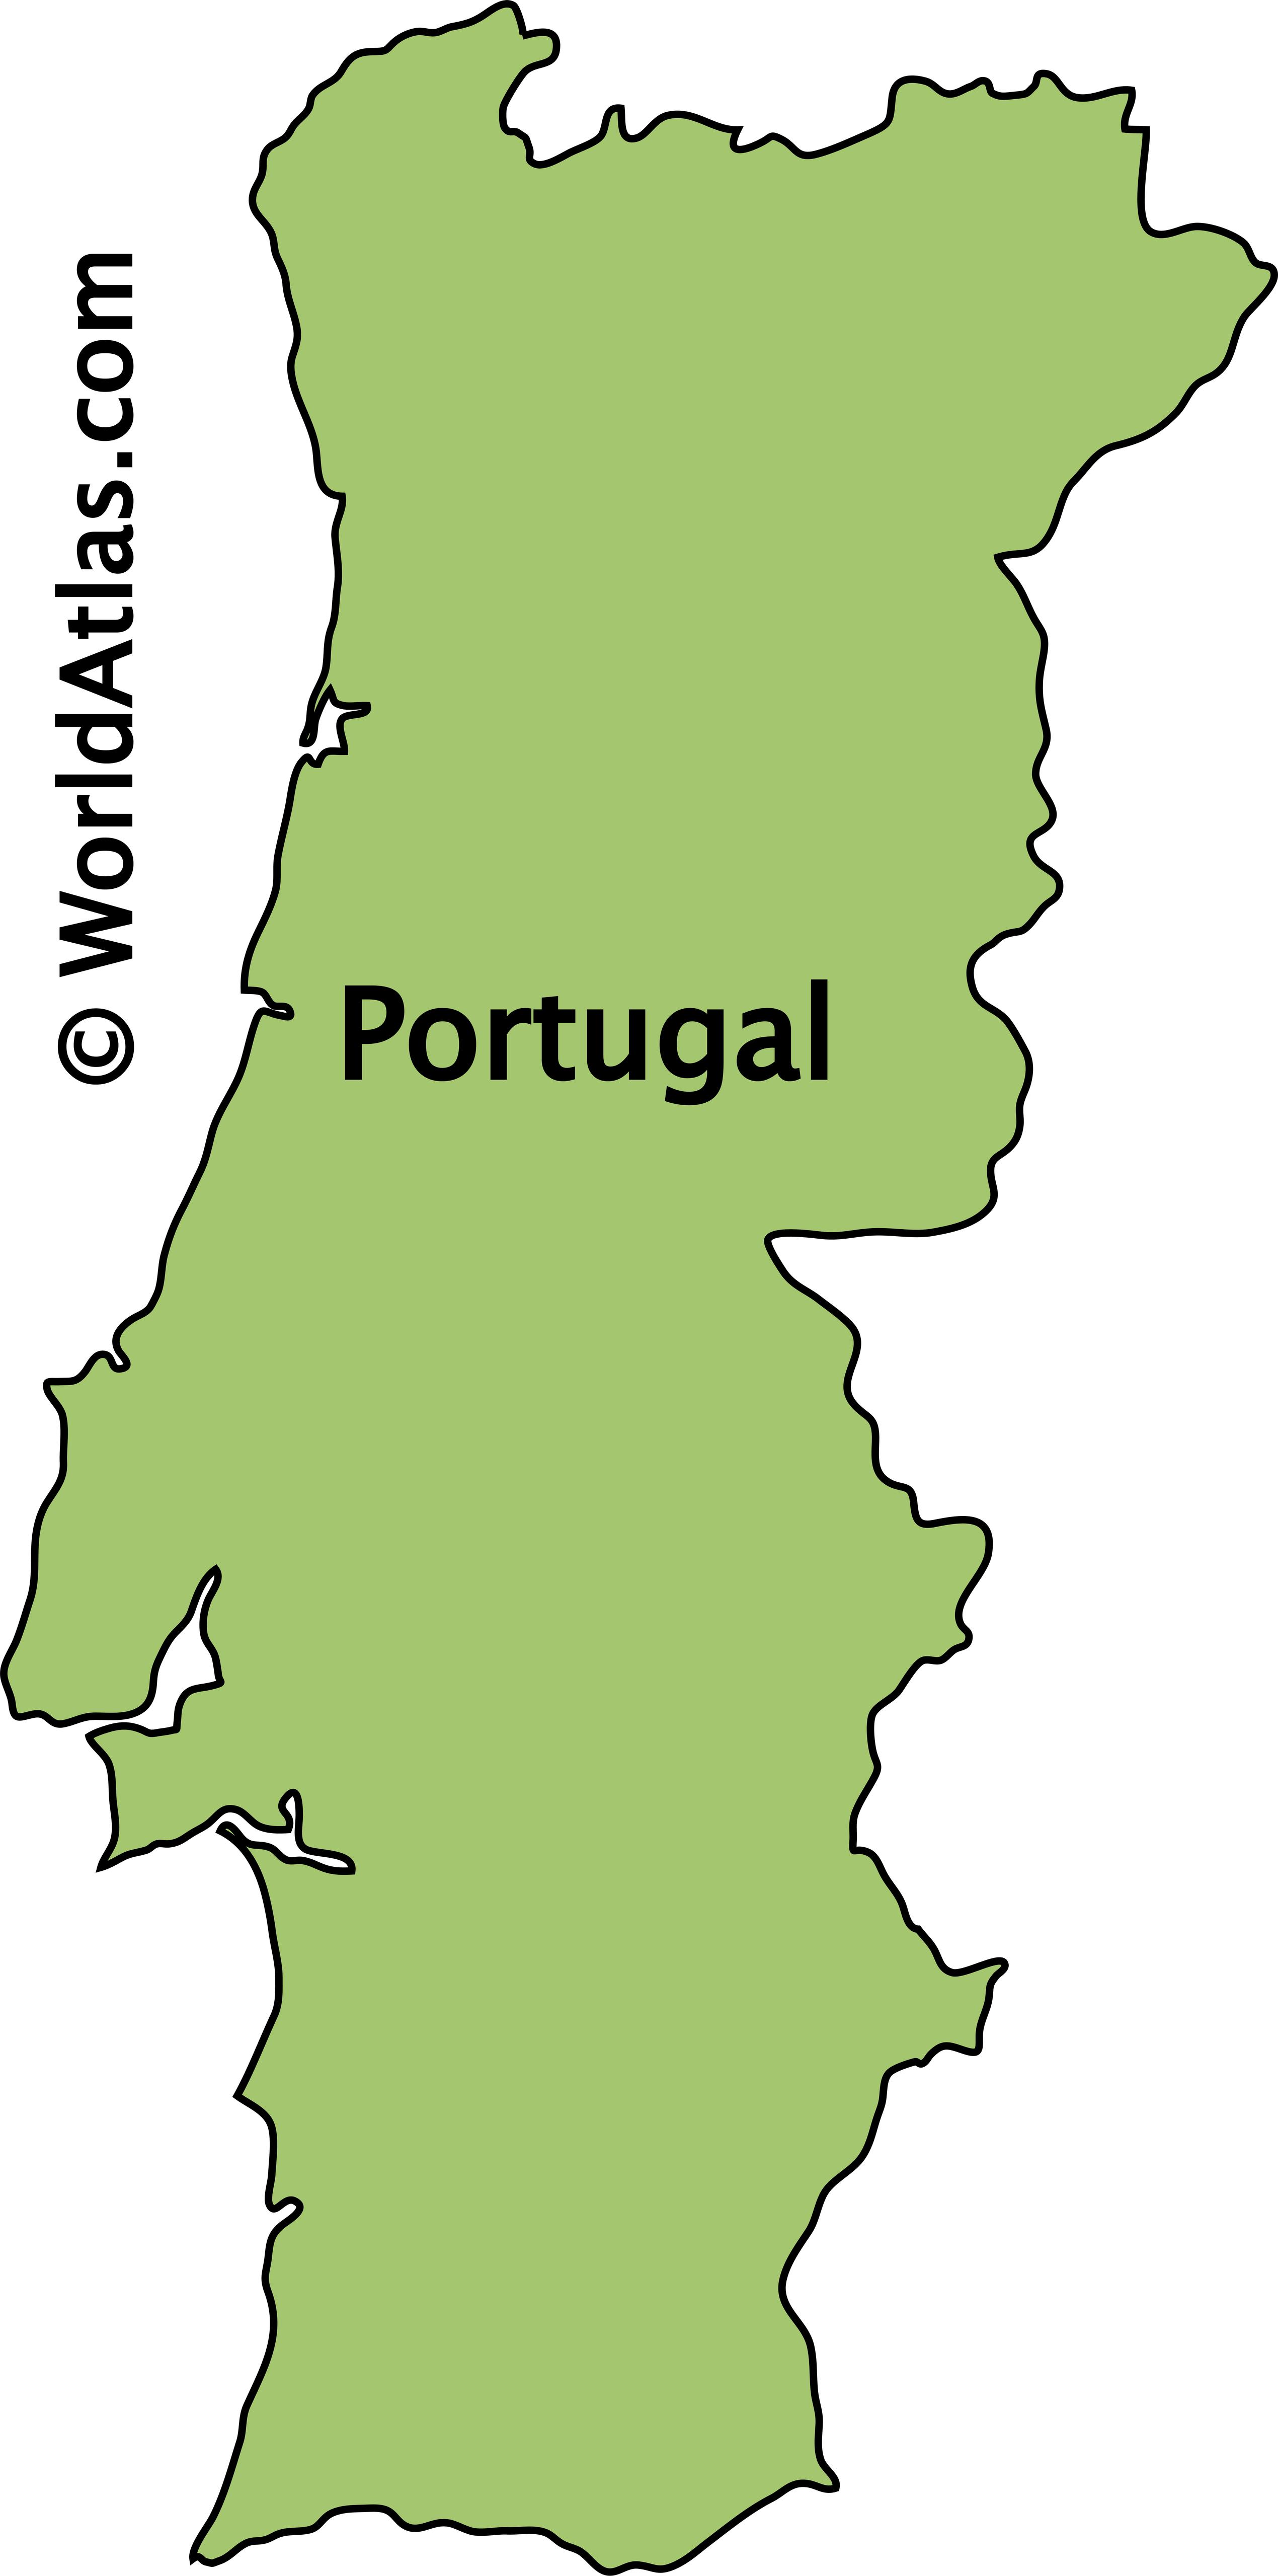 Portugal map1  Portugal, Portugal map, Portugal travel